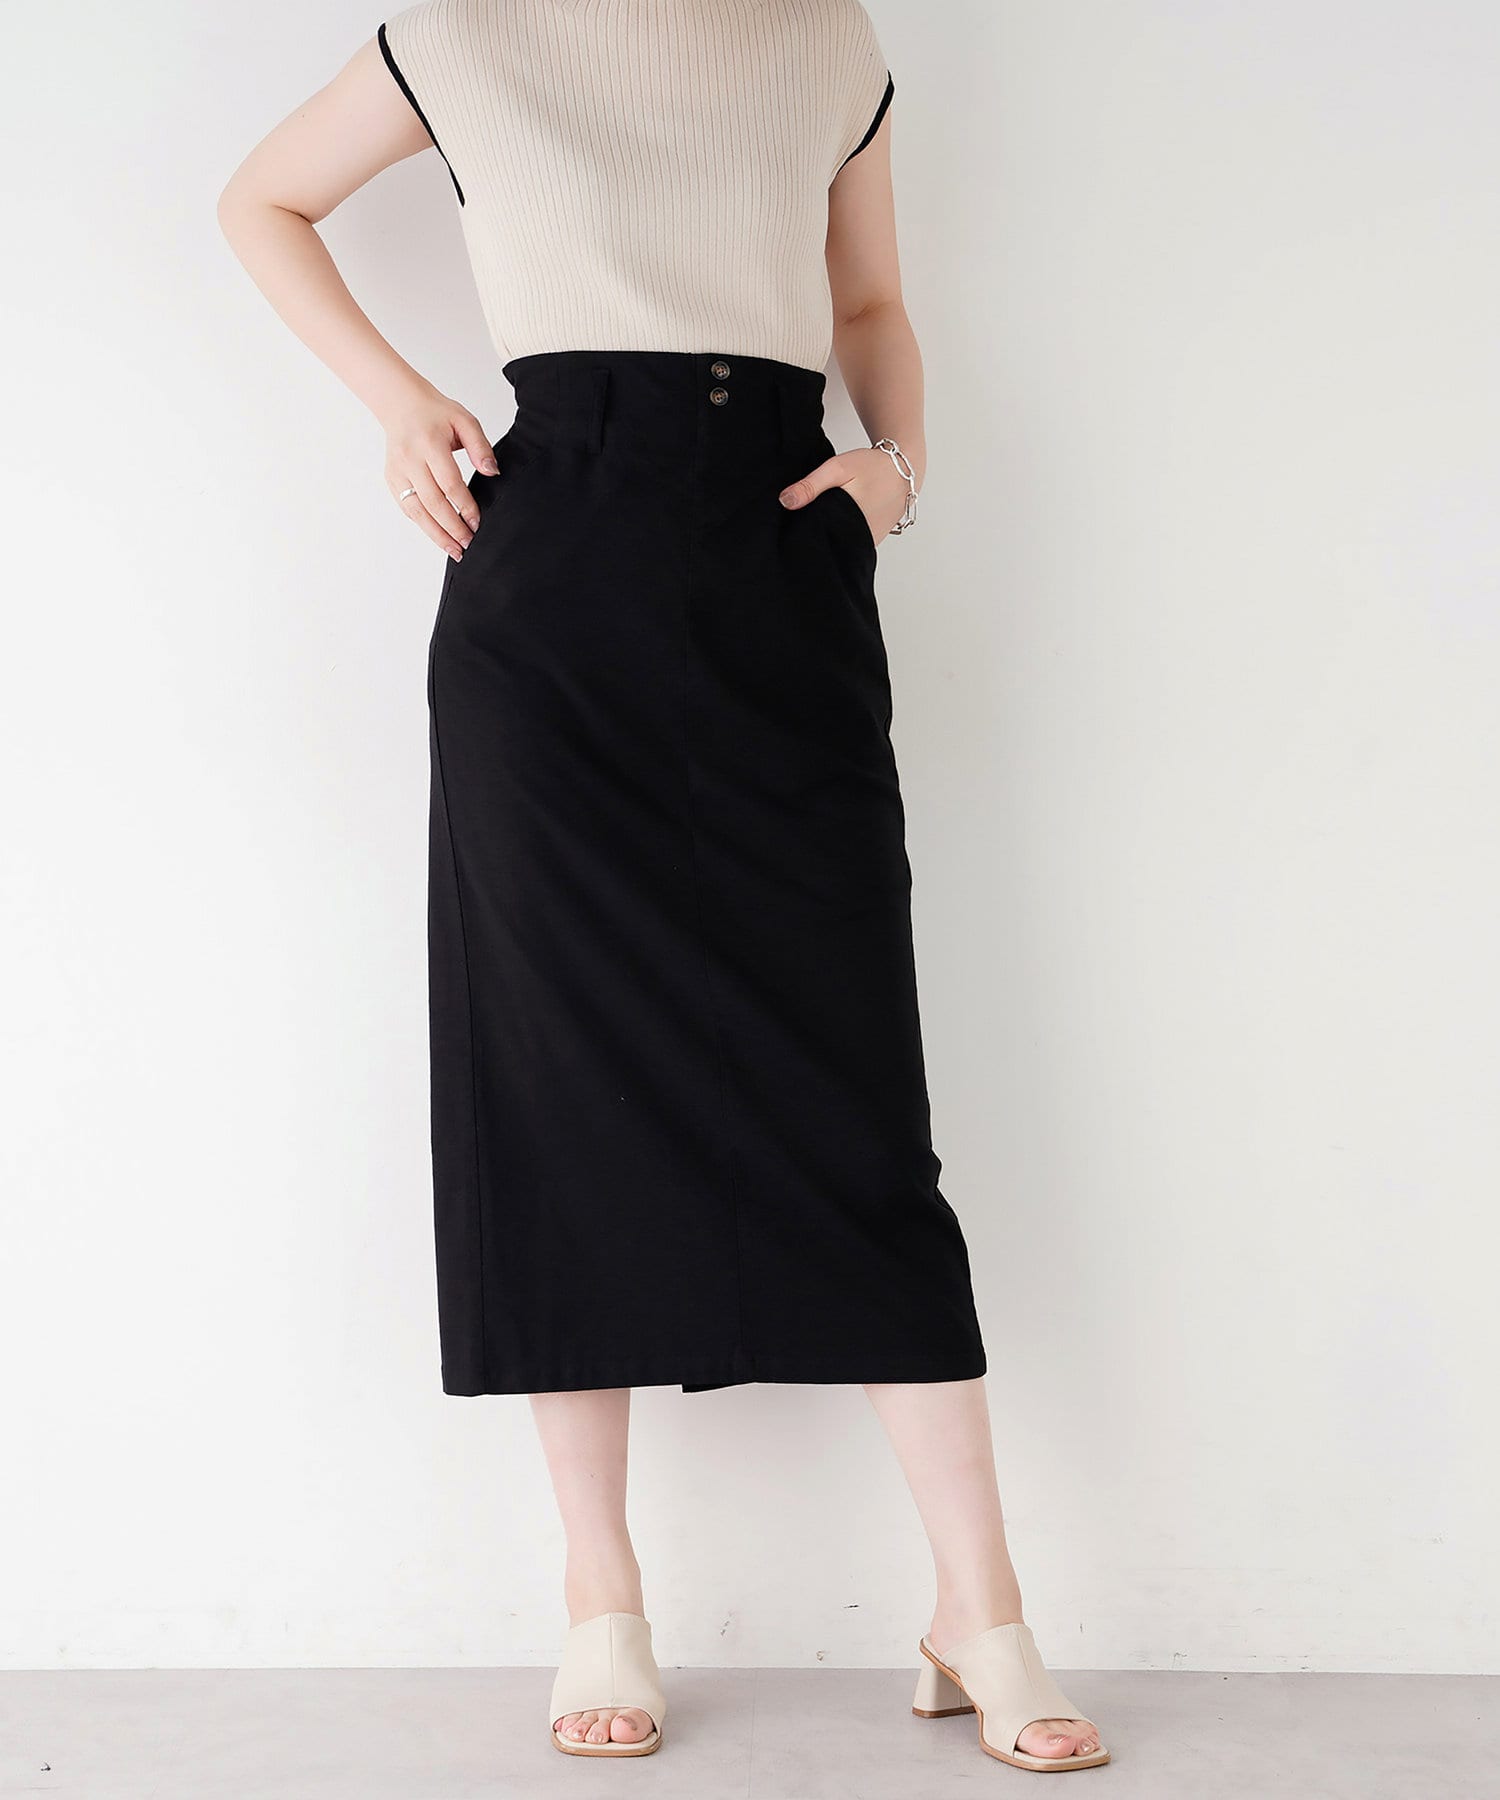 natural couture(ナチュラルクチュール) ストレッチリネンベルト付タイトスカート